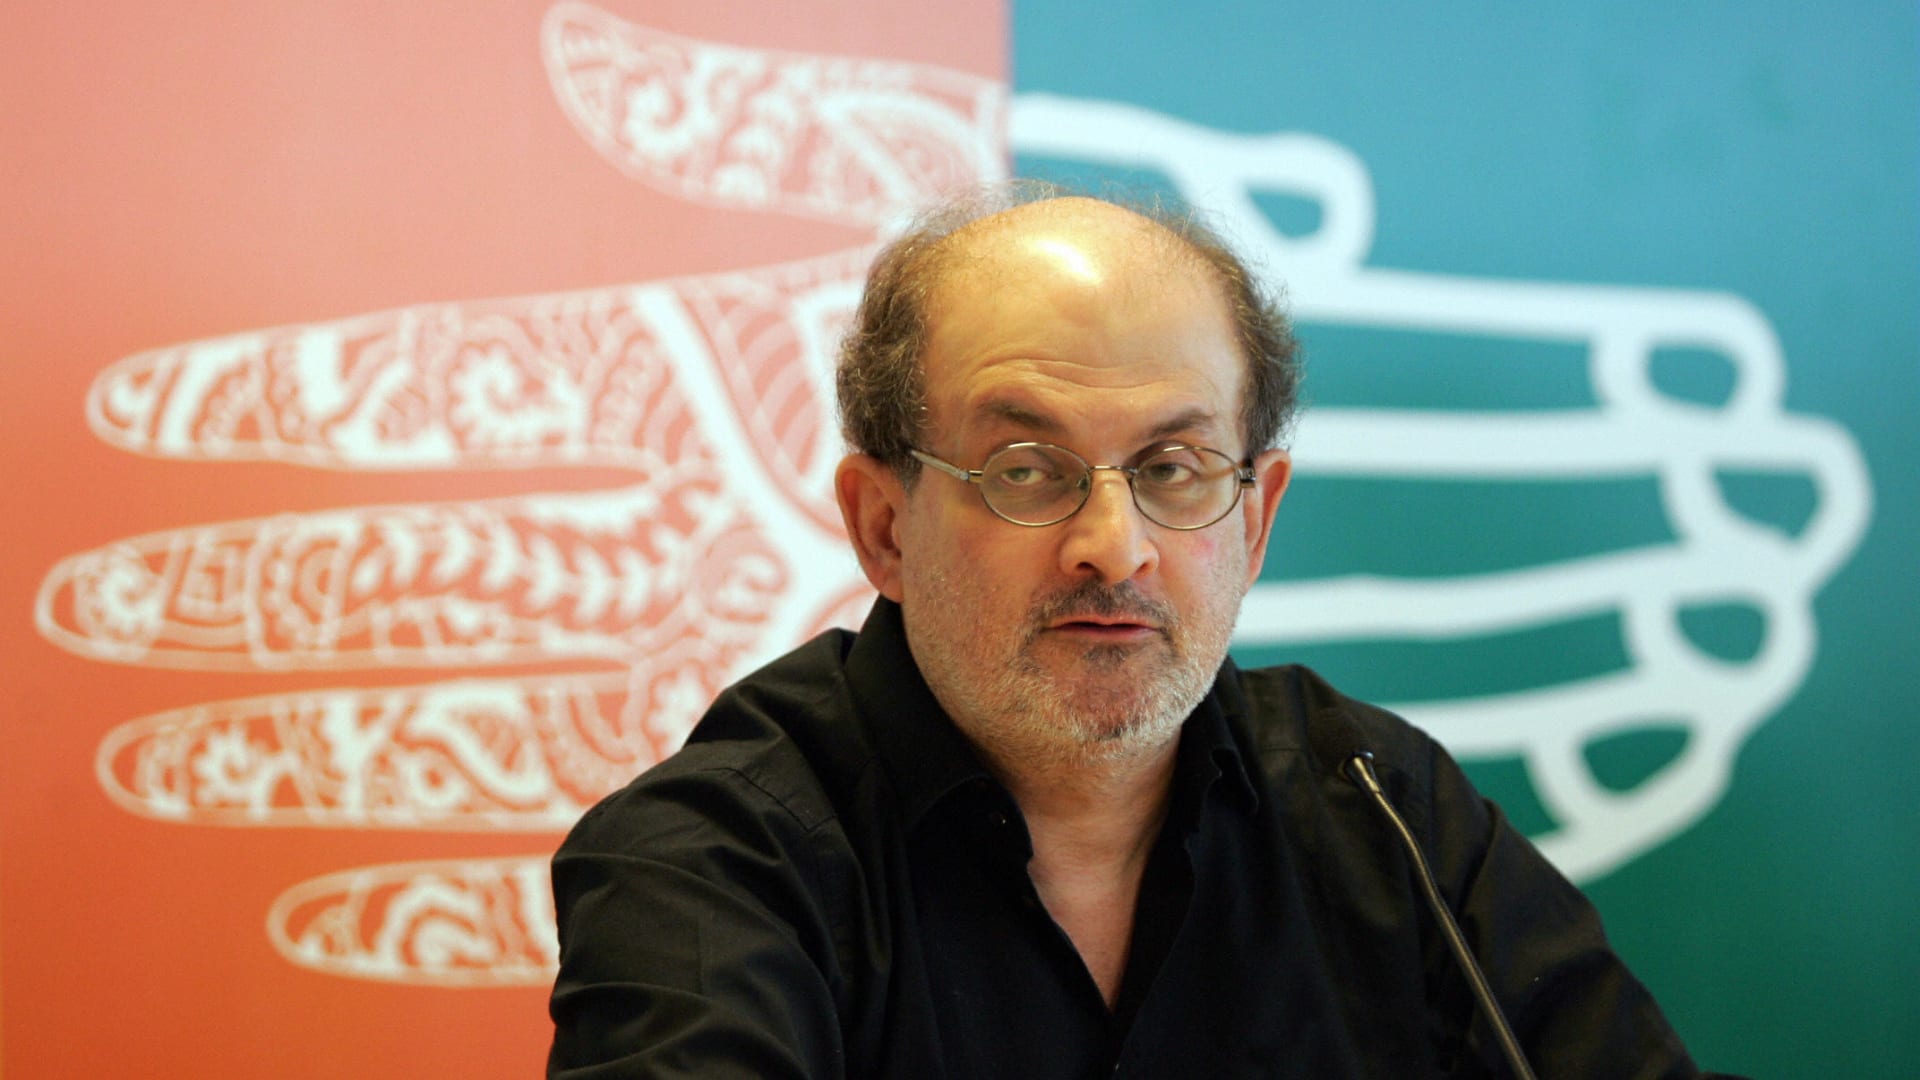 لحظة ما بعد الهجوم على سلمان رشدي مؤلف "آيات شيطانية" على مسرح في نيويورك